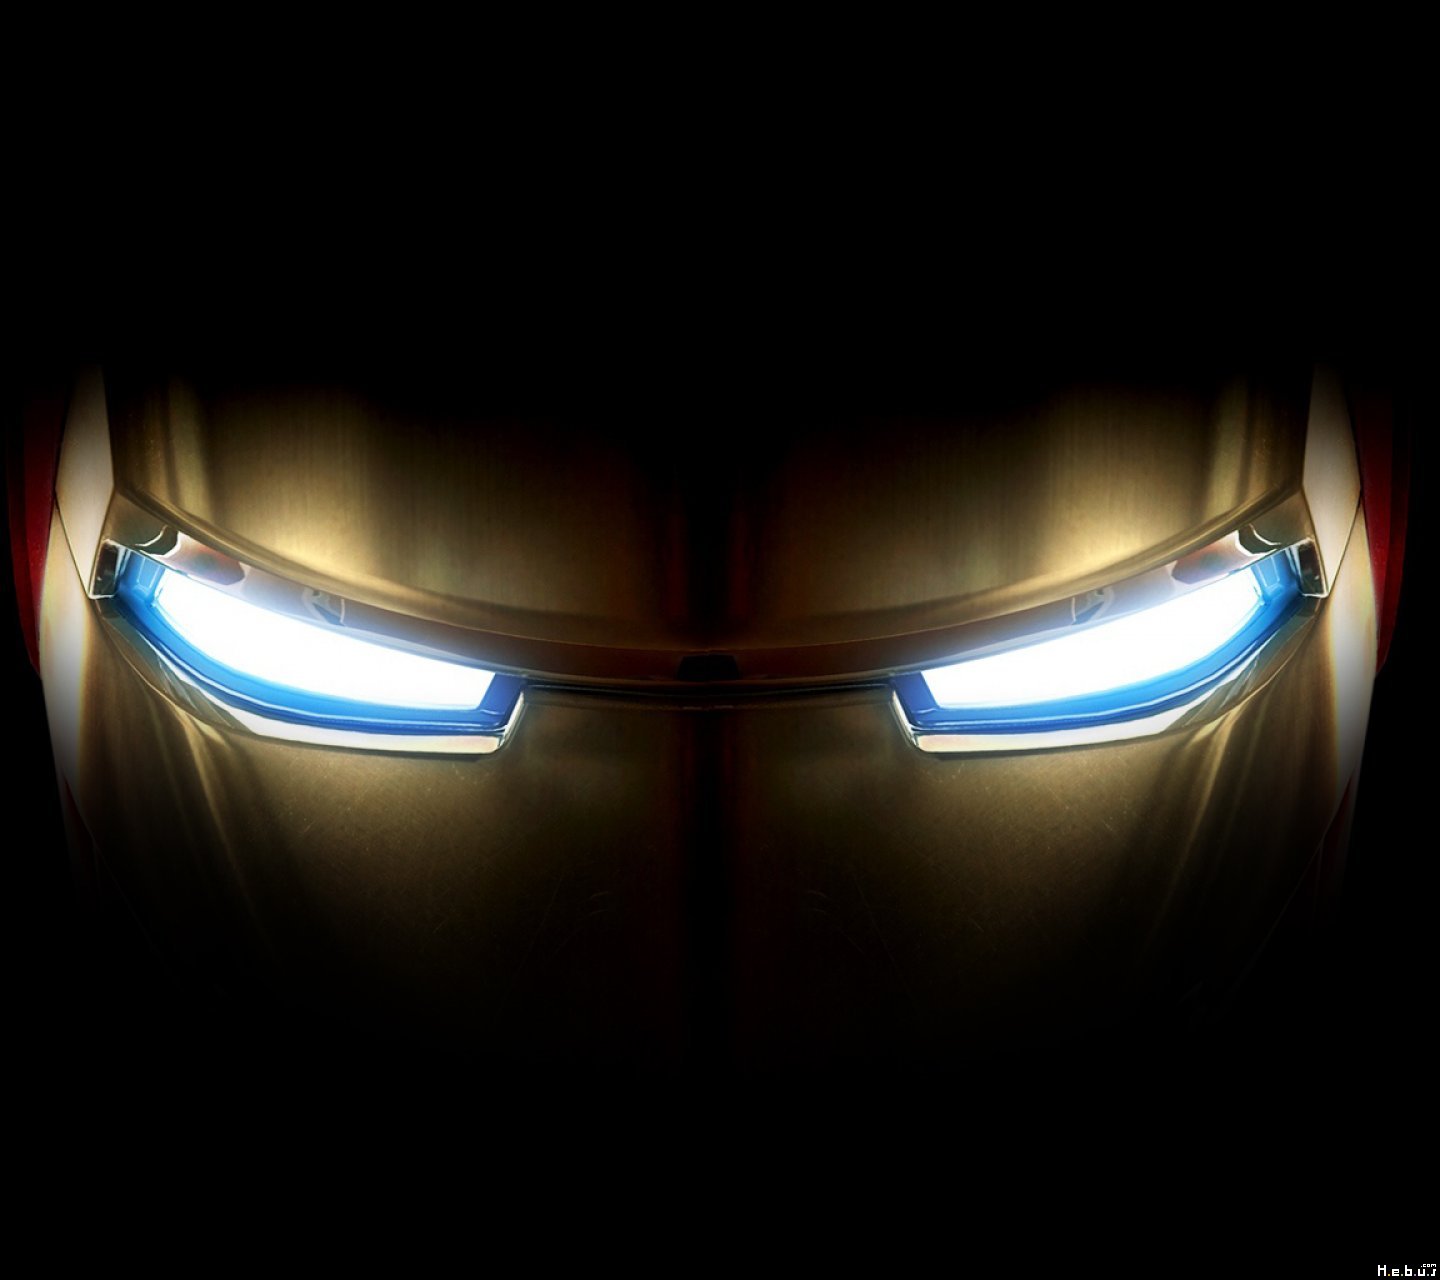 Iron Man 3 2013 - TORRENT 720p 1080p TorrentCounter